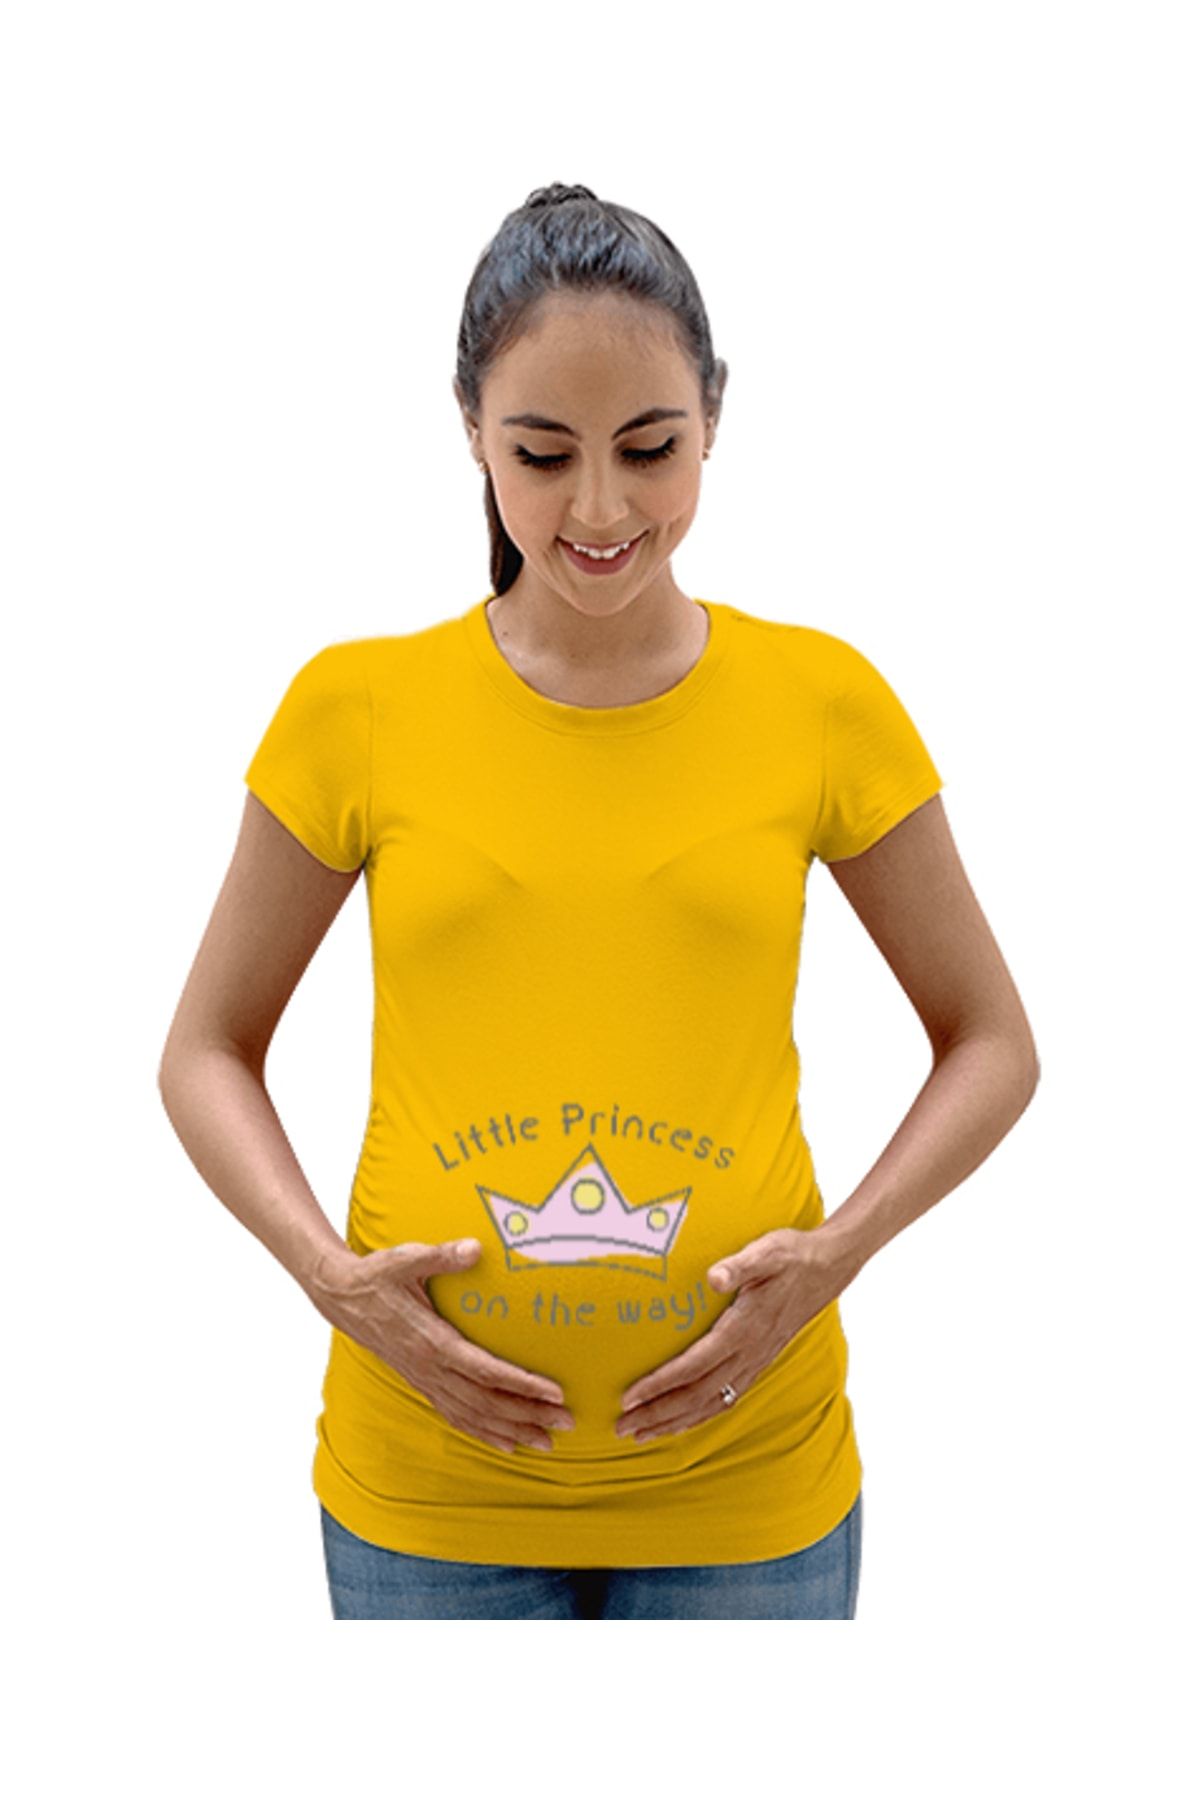 Tisho Küçük Prenses Yolda - Little Princess On The Way Baskılı Sarı Kadın Hamile Tişört